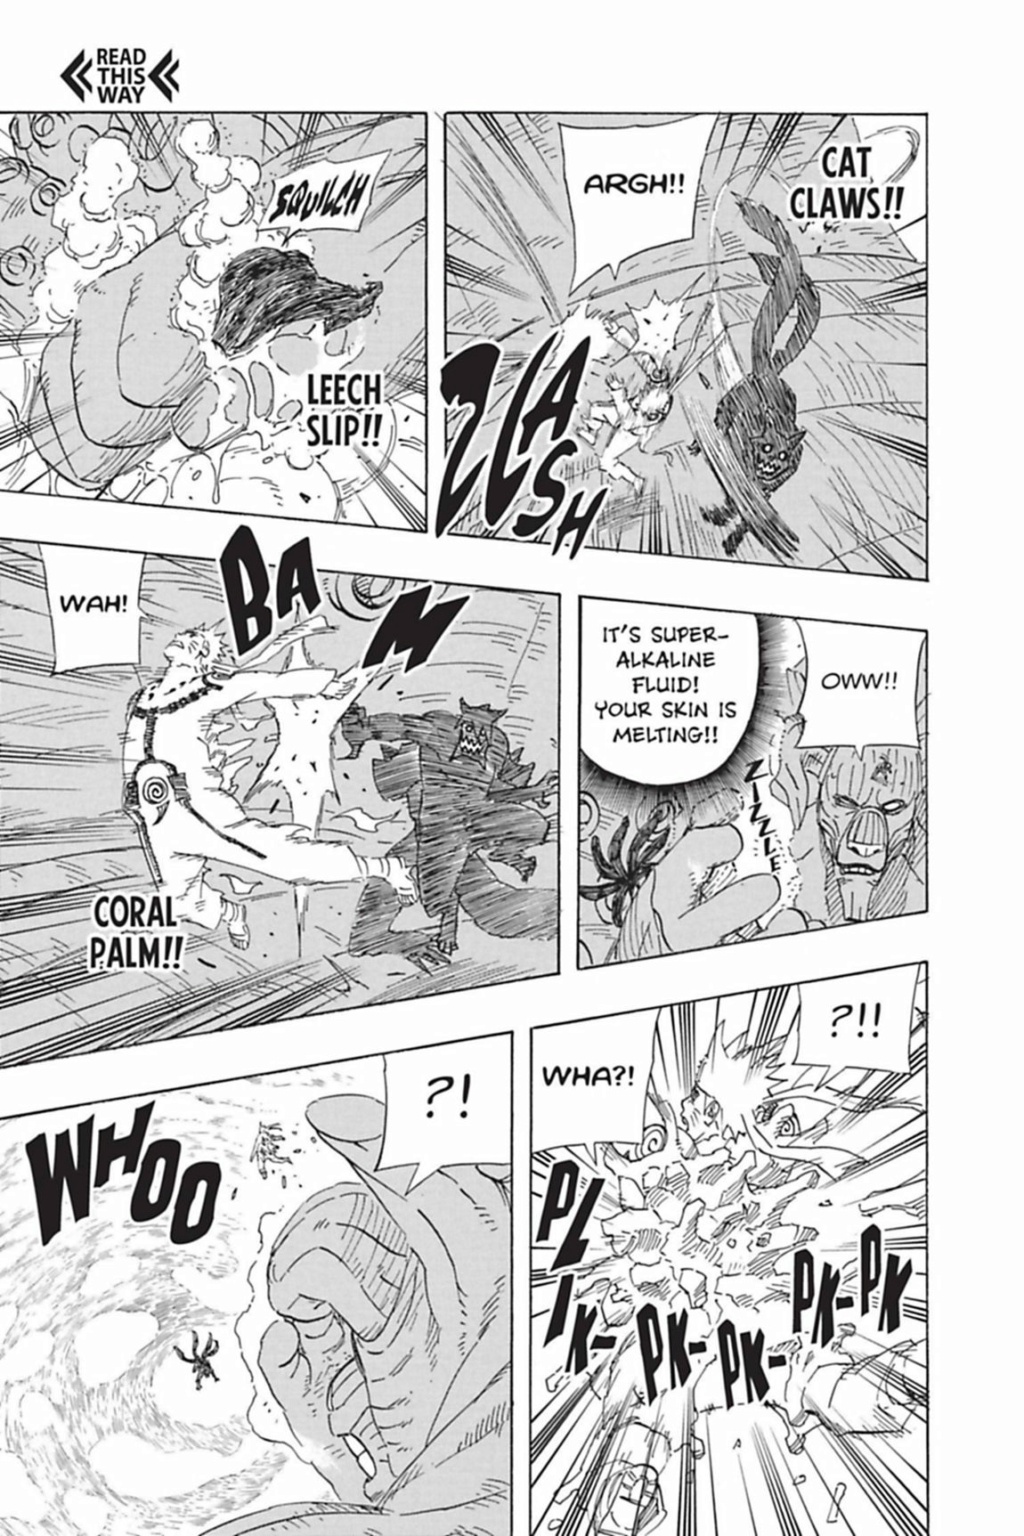 77 - Kinkaku e Ginkaku vs Kakashi  - Página 2 0020_010